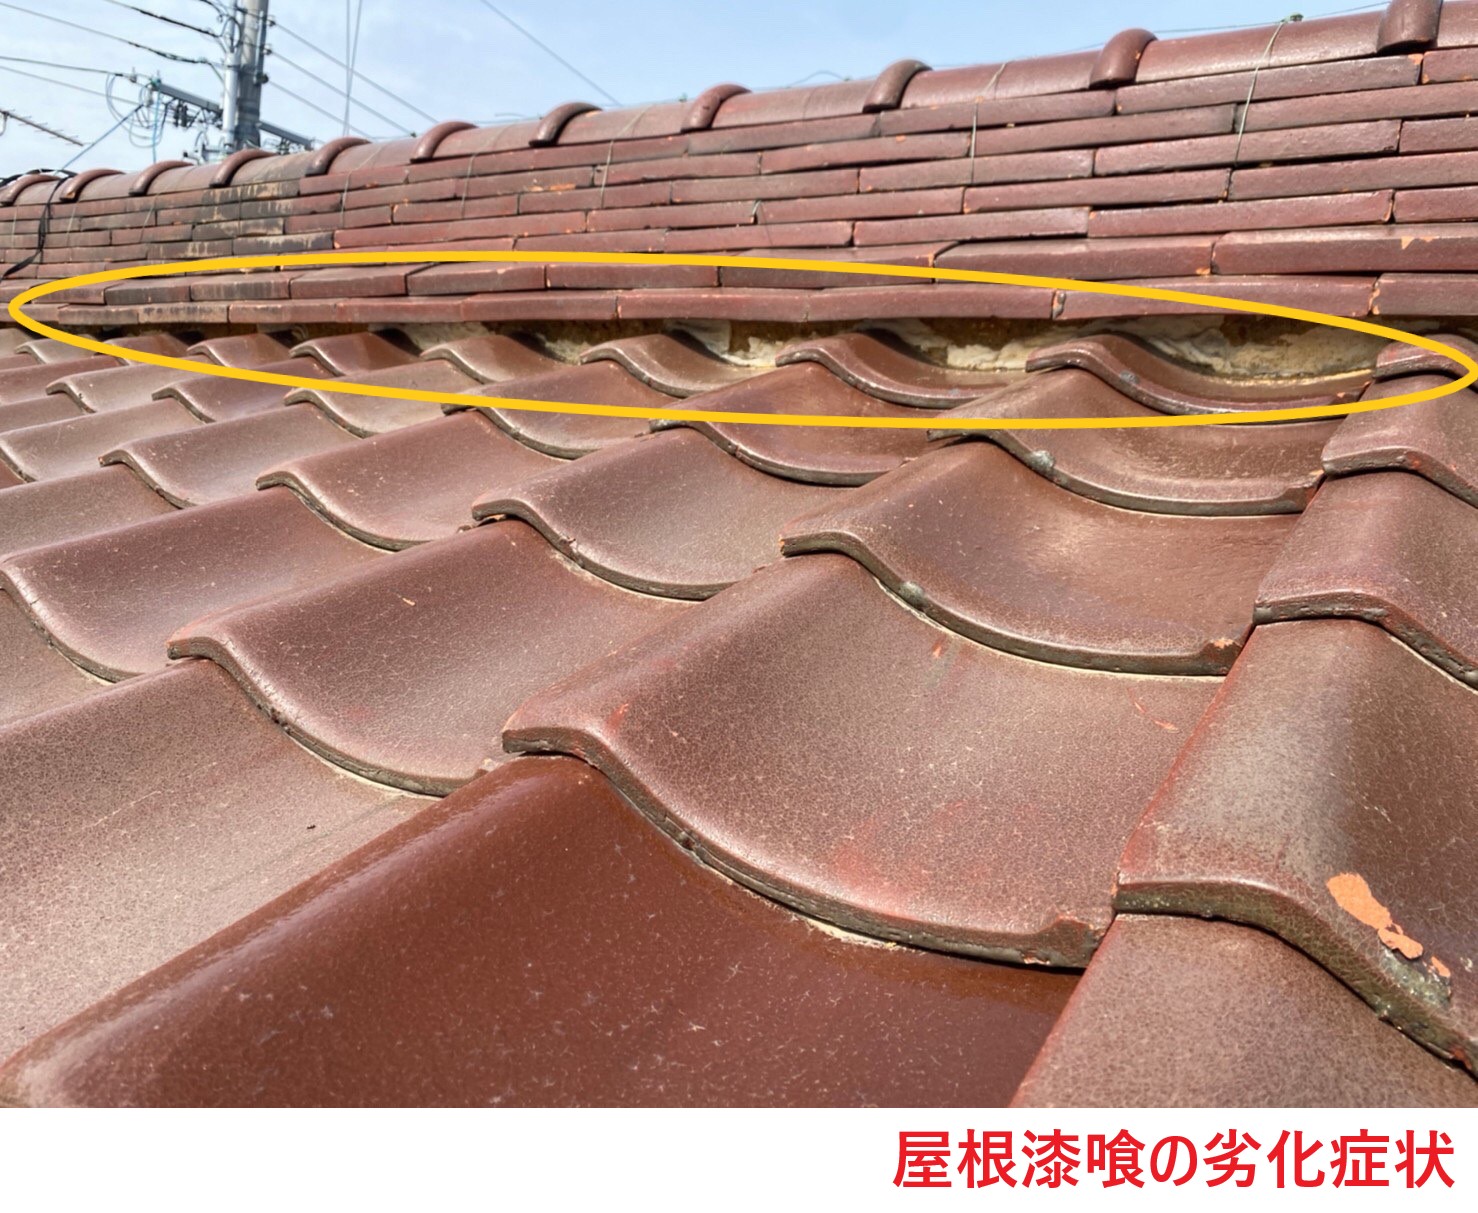 屋根漆喰の劣化症状 (1)